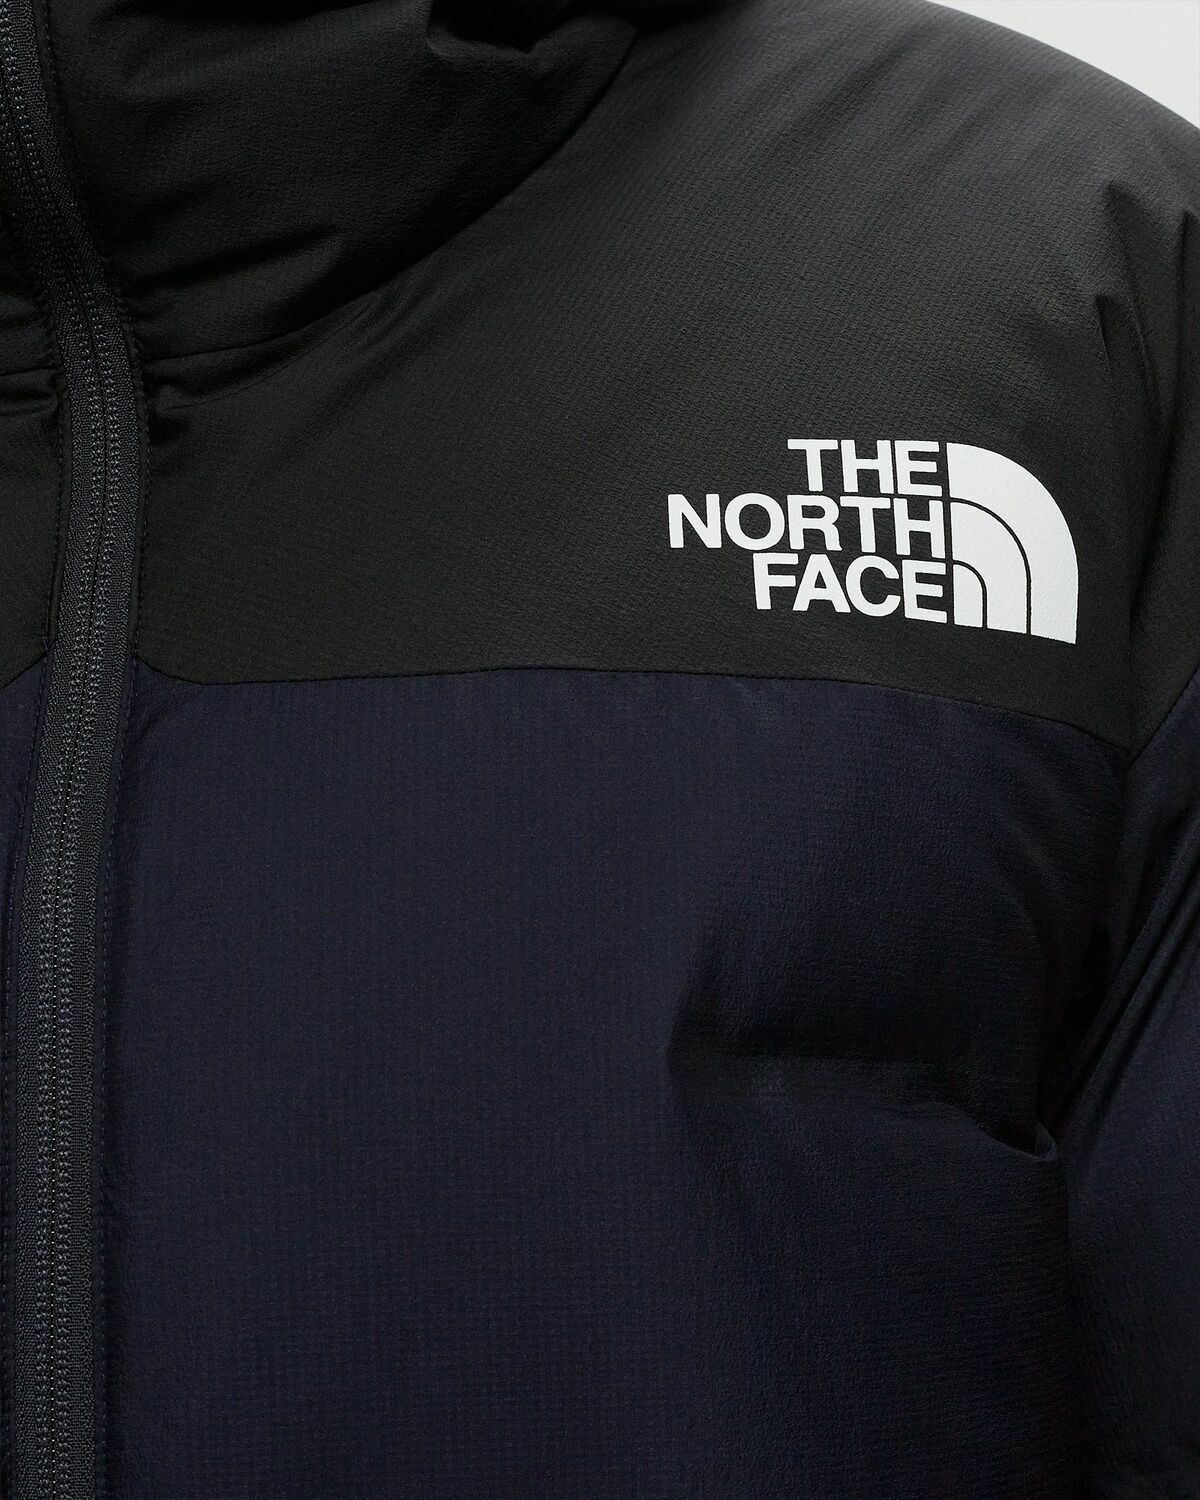 The North Face x Project U Cloud Veste à Logo Imprimé - Farfetch